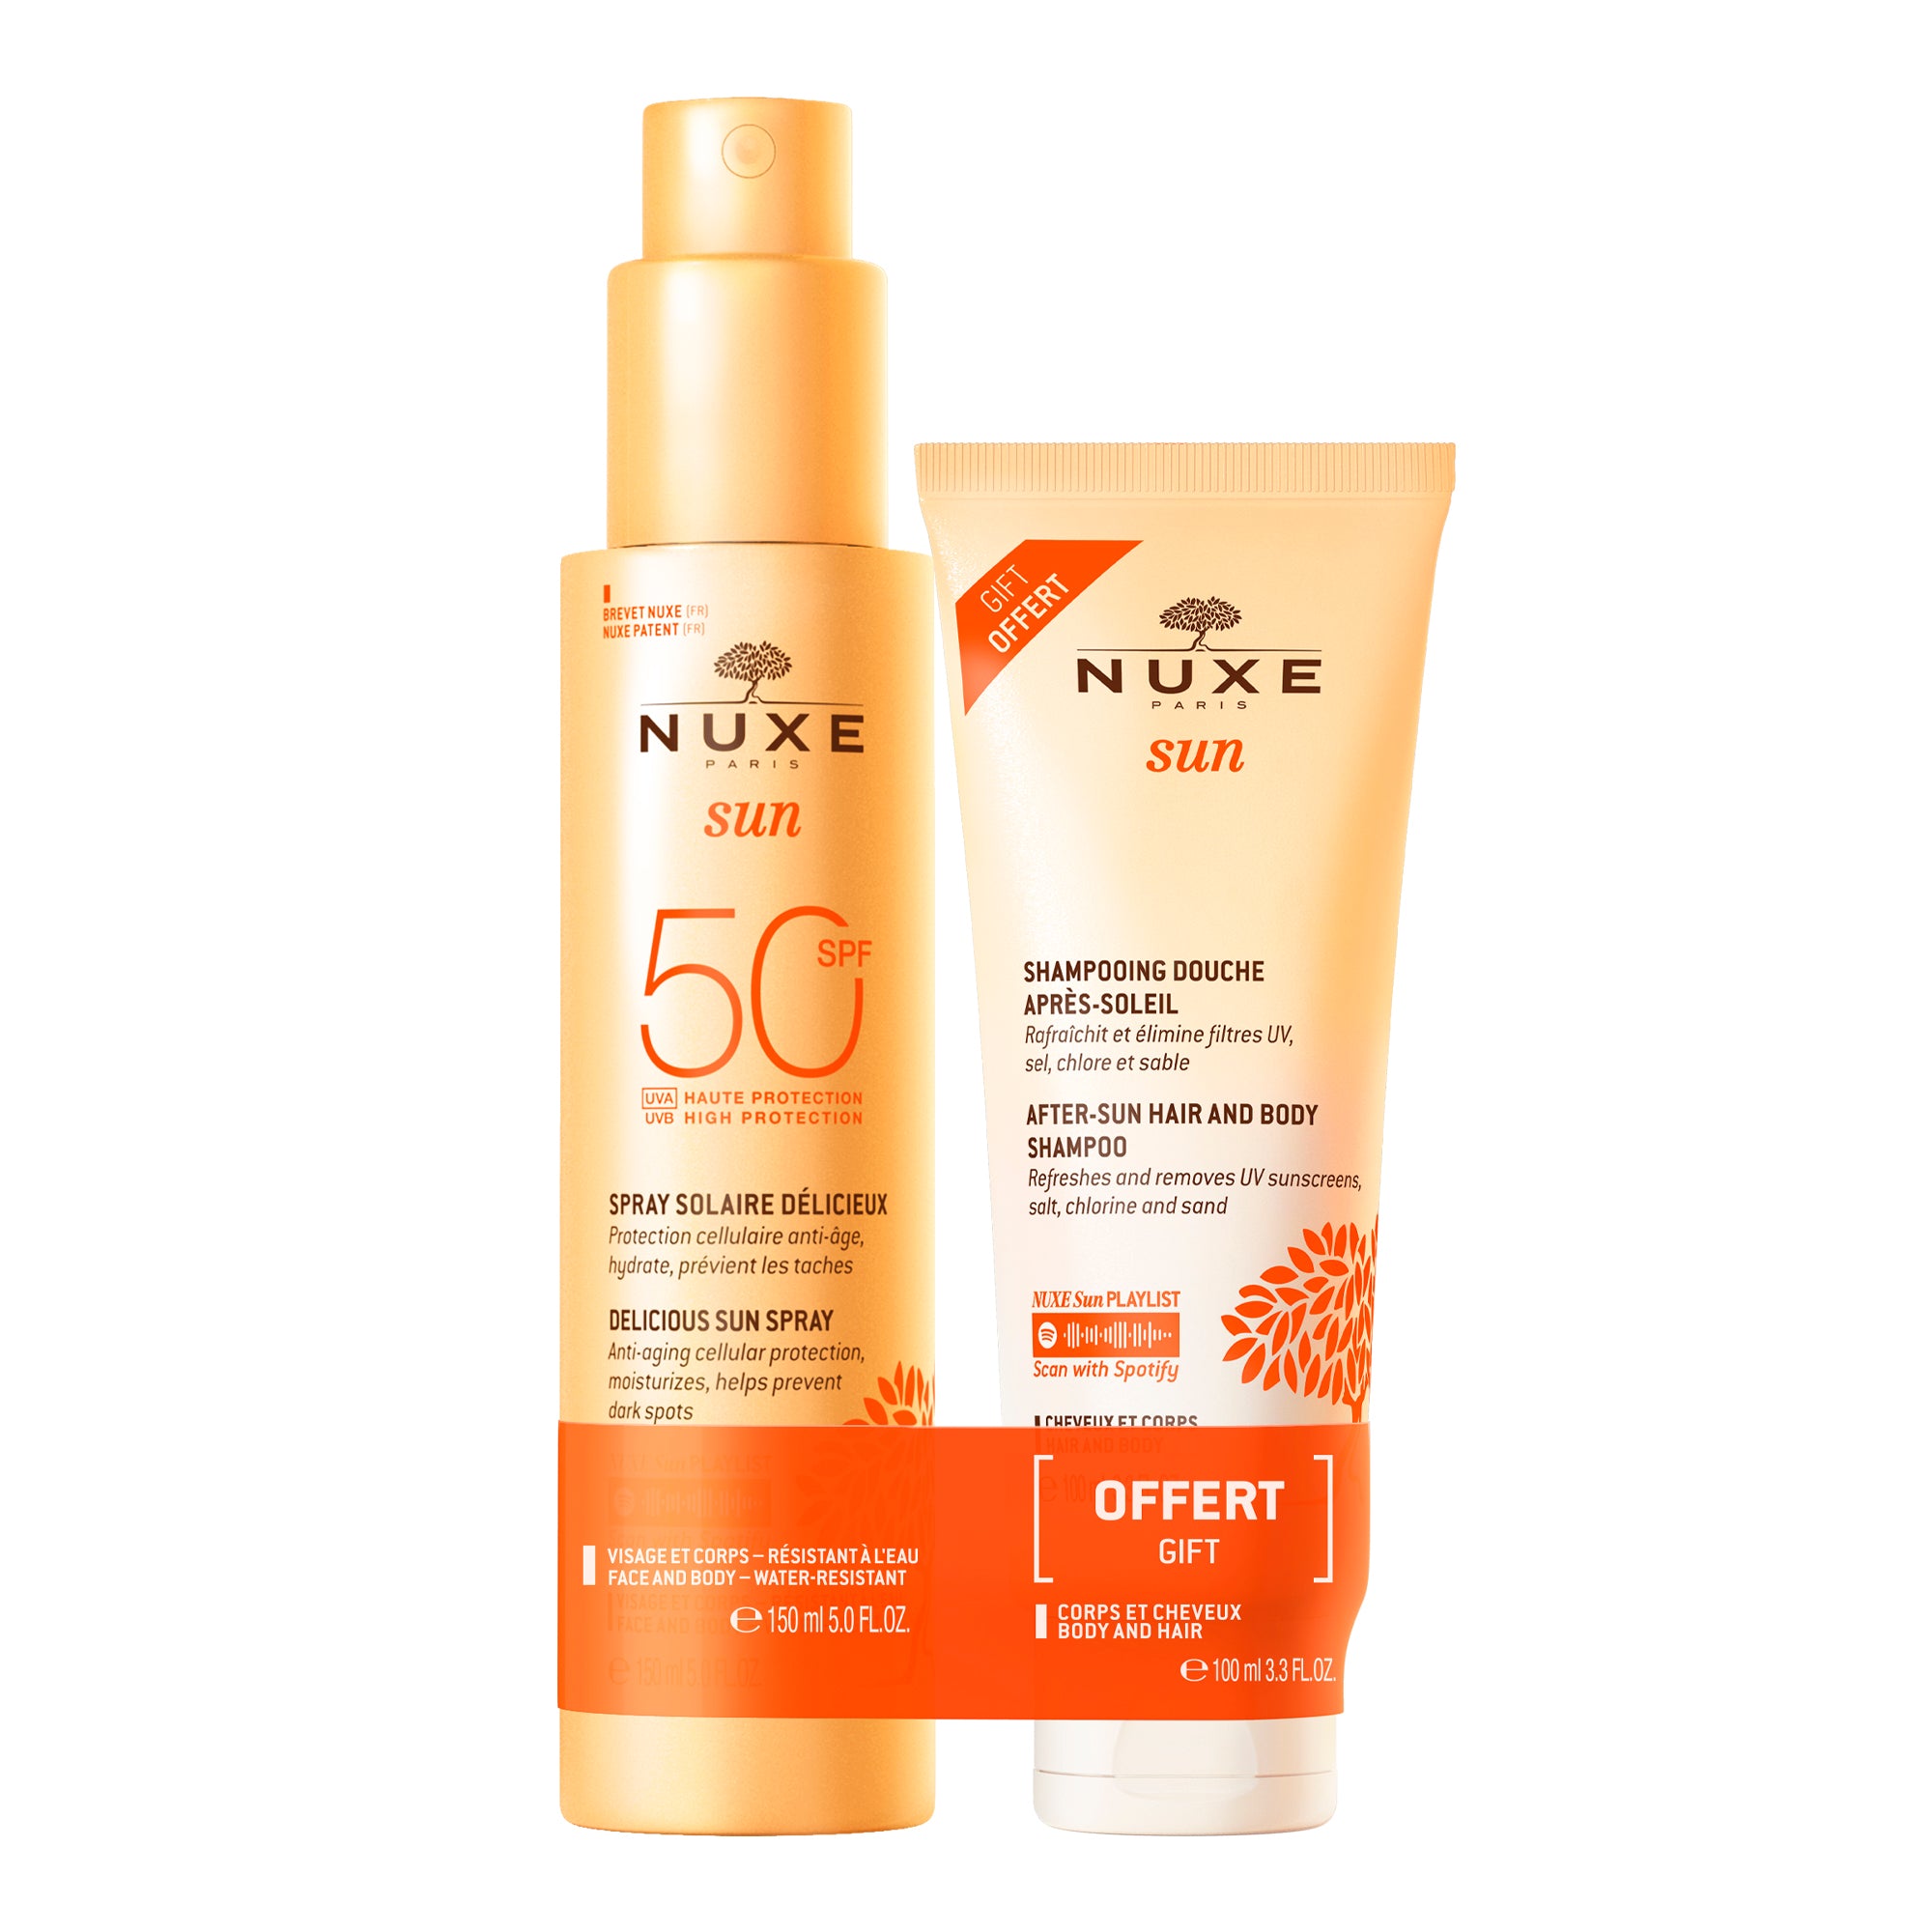 Duo Spray Solaire Délicieux Haute Protection SPF50 visage et corps et Shampooing Douche après-soleil 100ml offert